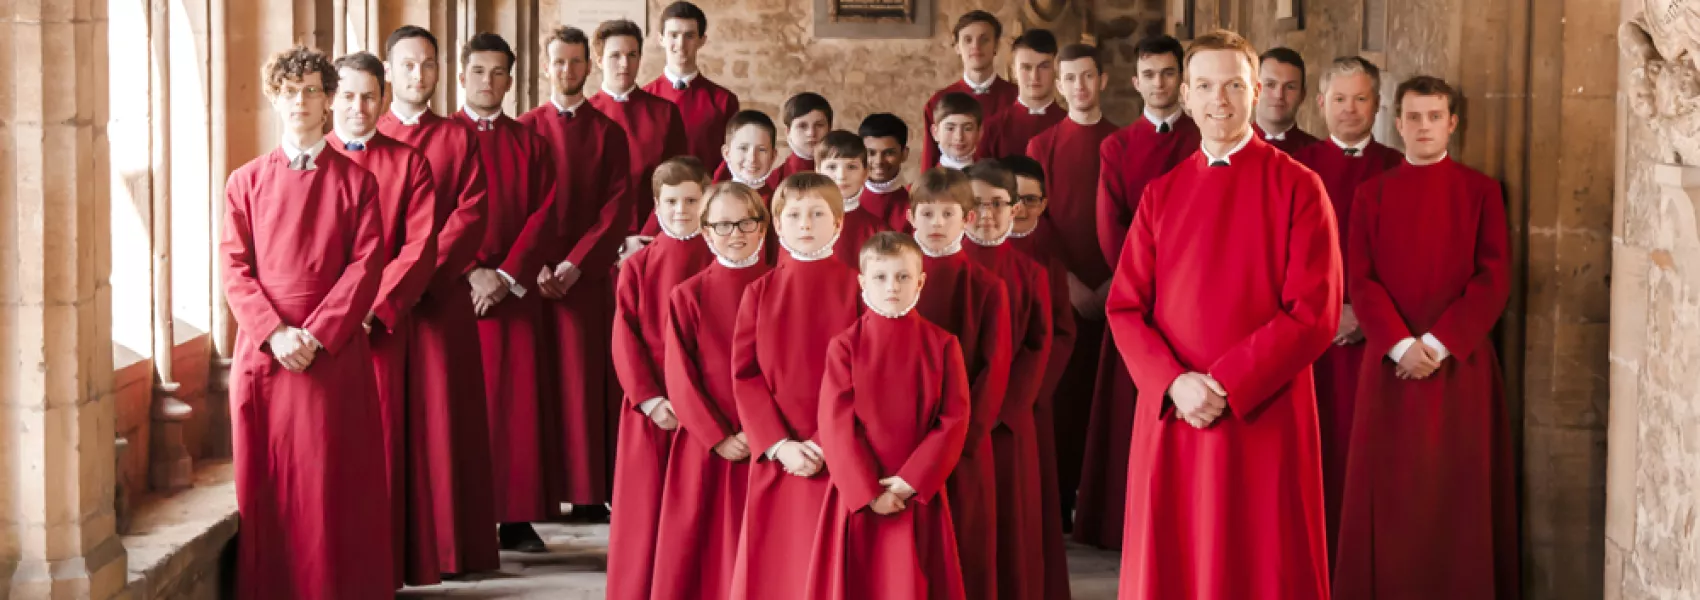 New College Choir